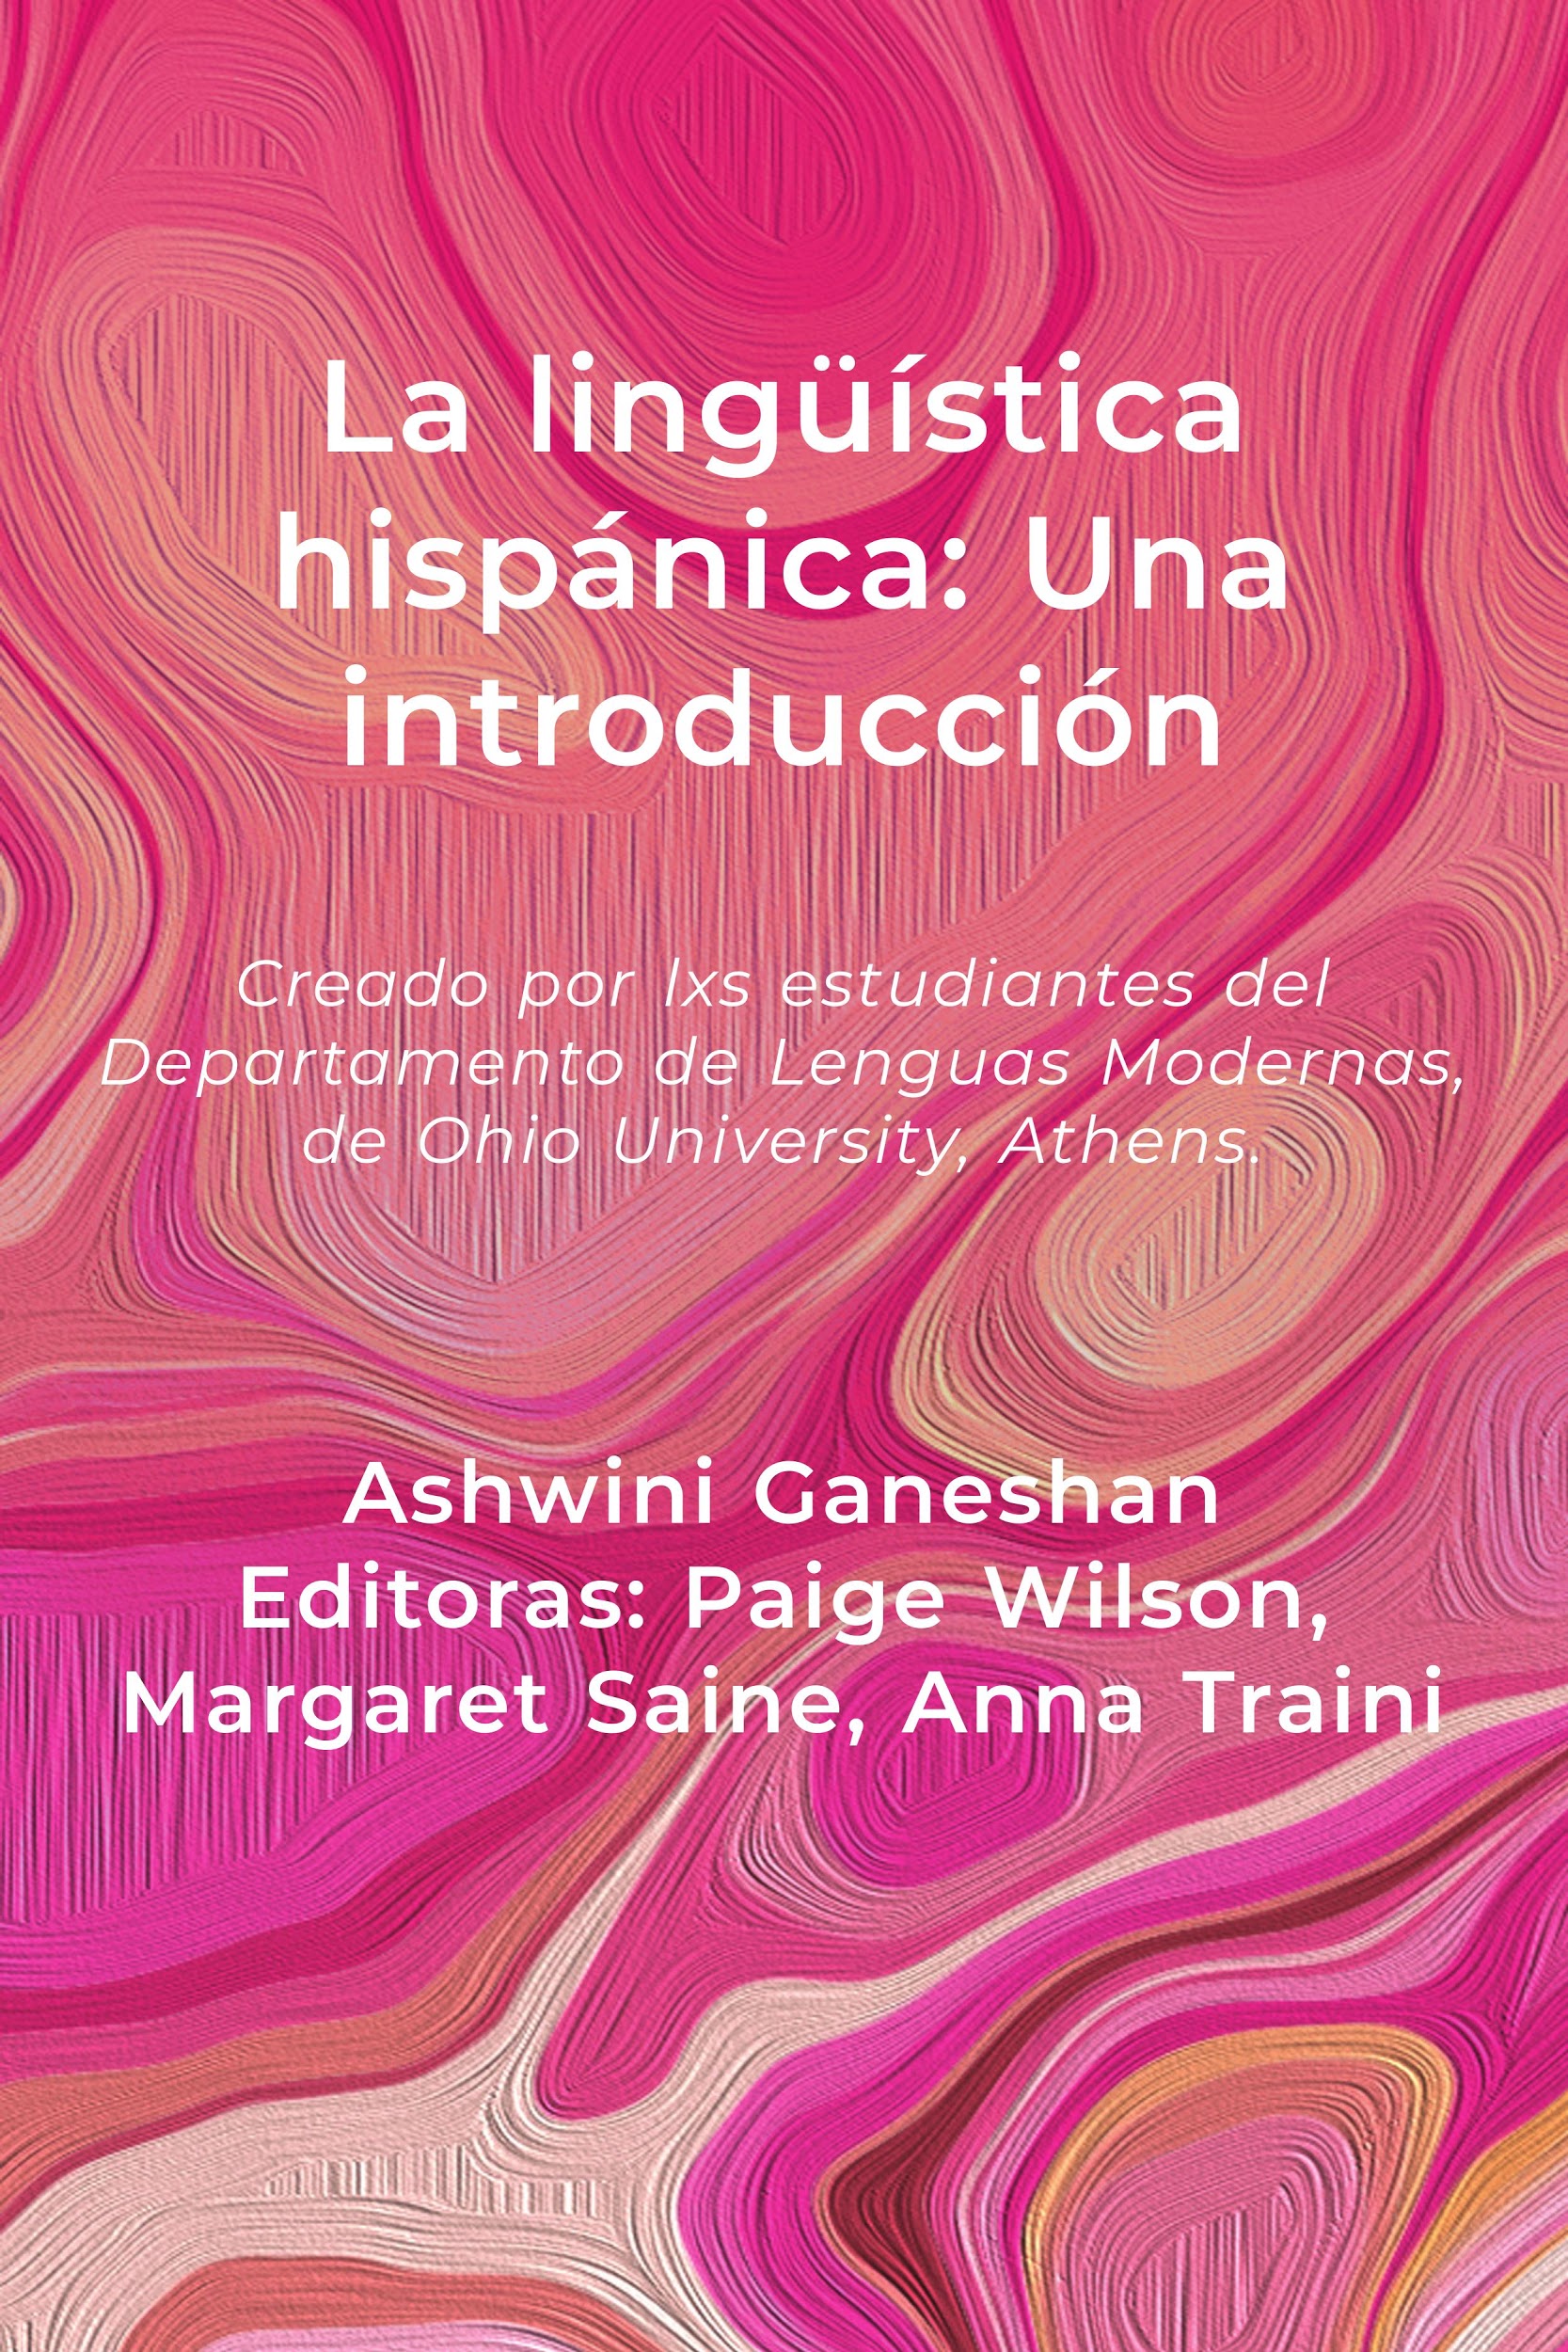 Book cover of La linguistica hispanica: una introduccion